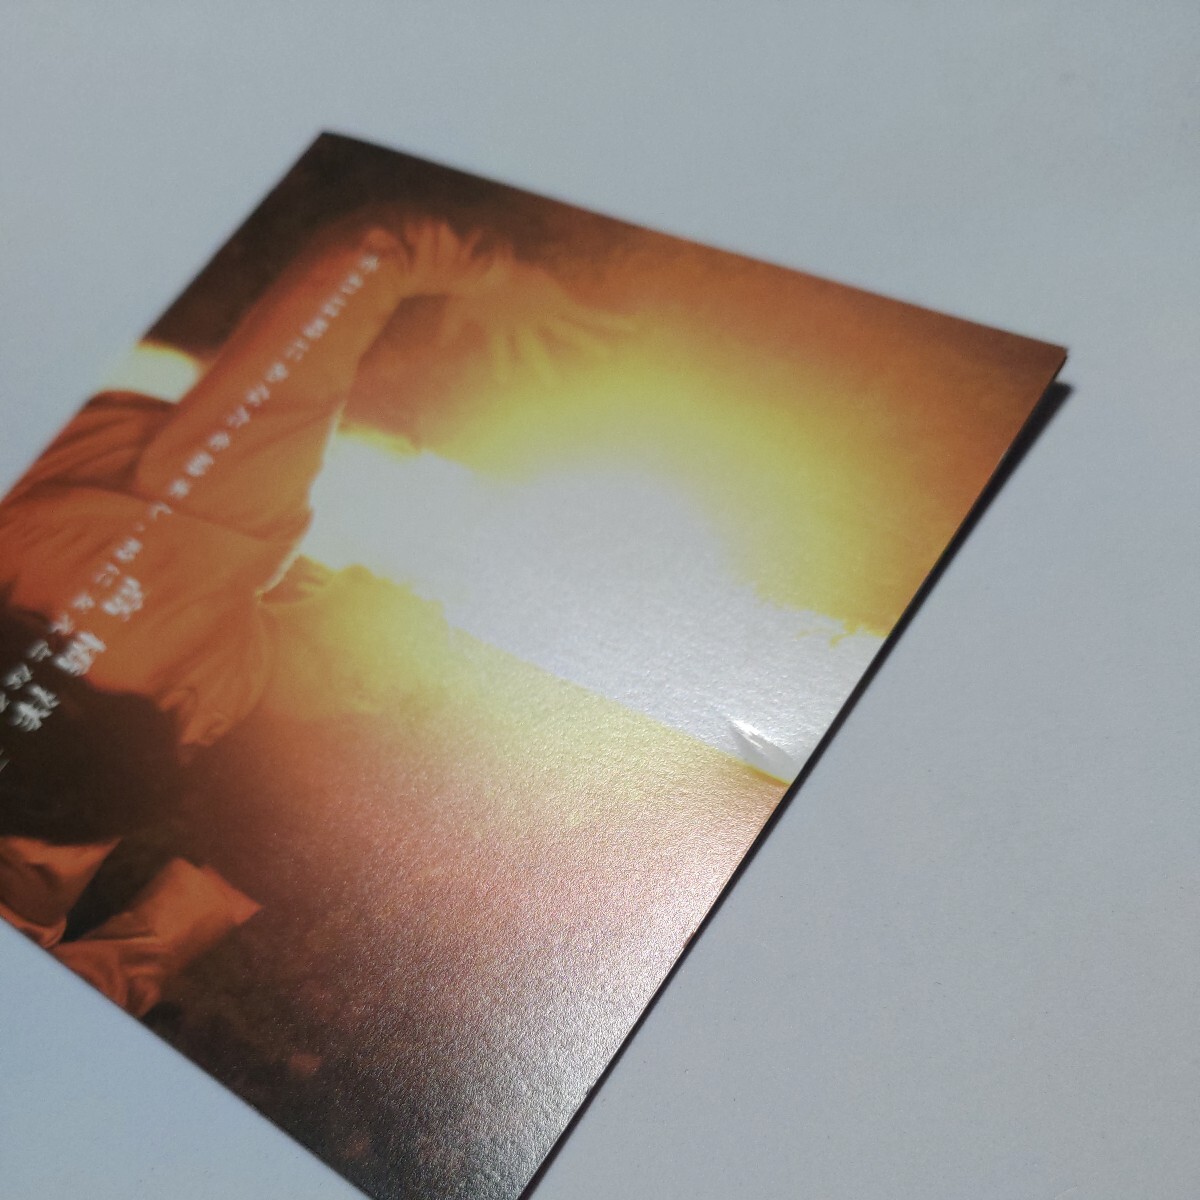 高橋洋子「metamorphose/夏色のカケラ(石田燿子)」この醜くも美しい世界「蒼き炎」「それは時にあなたを励まし、時に支えとなるもの」CD3枚